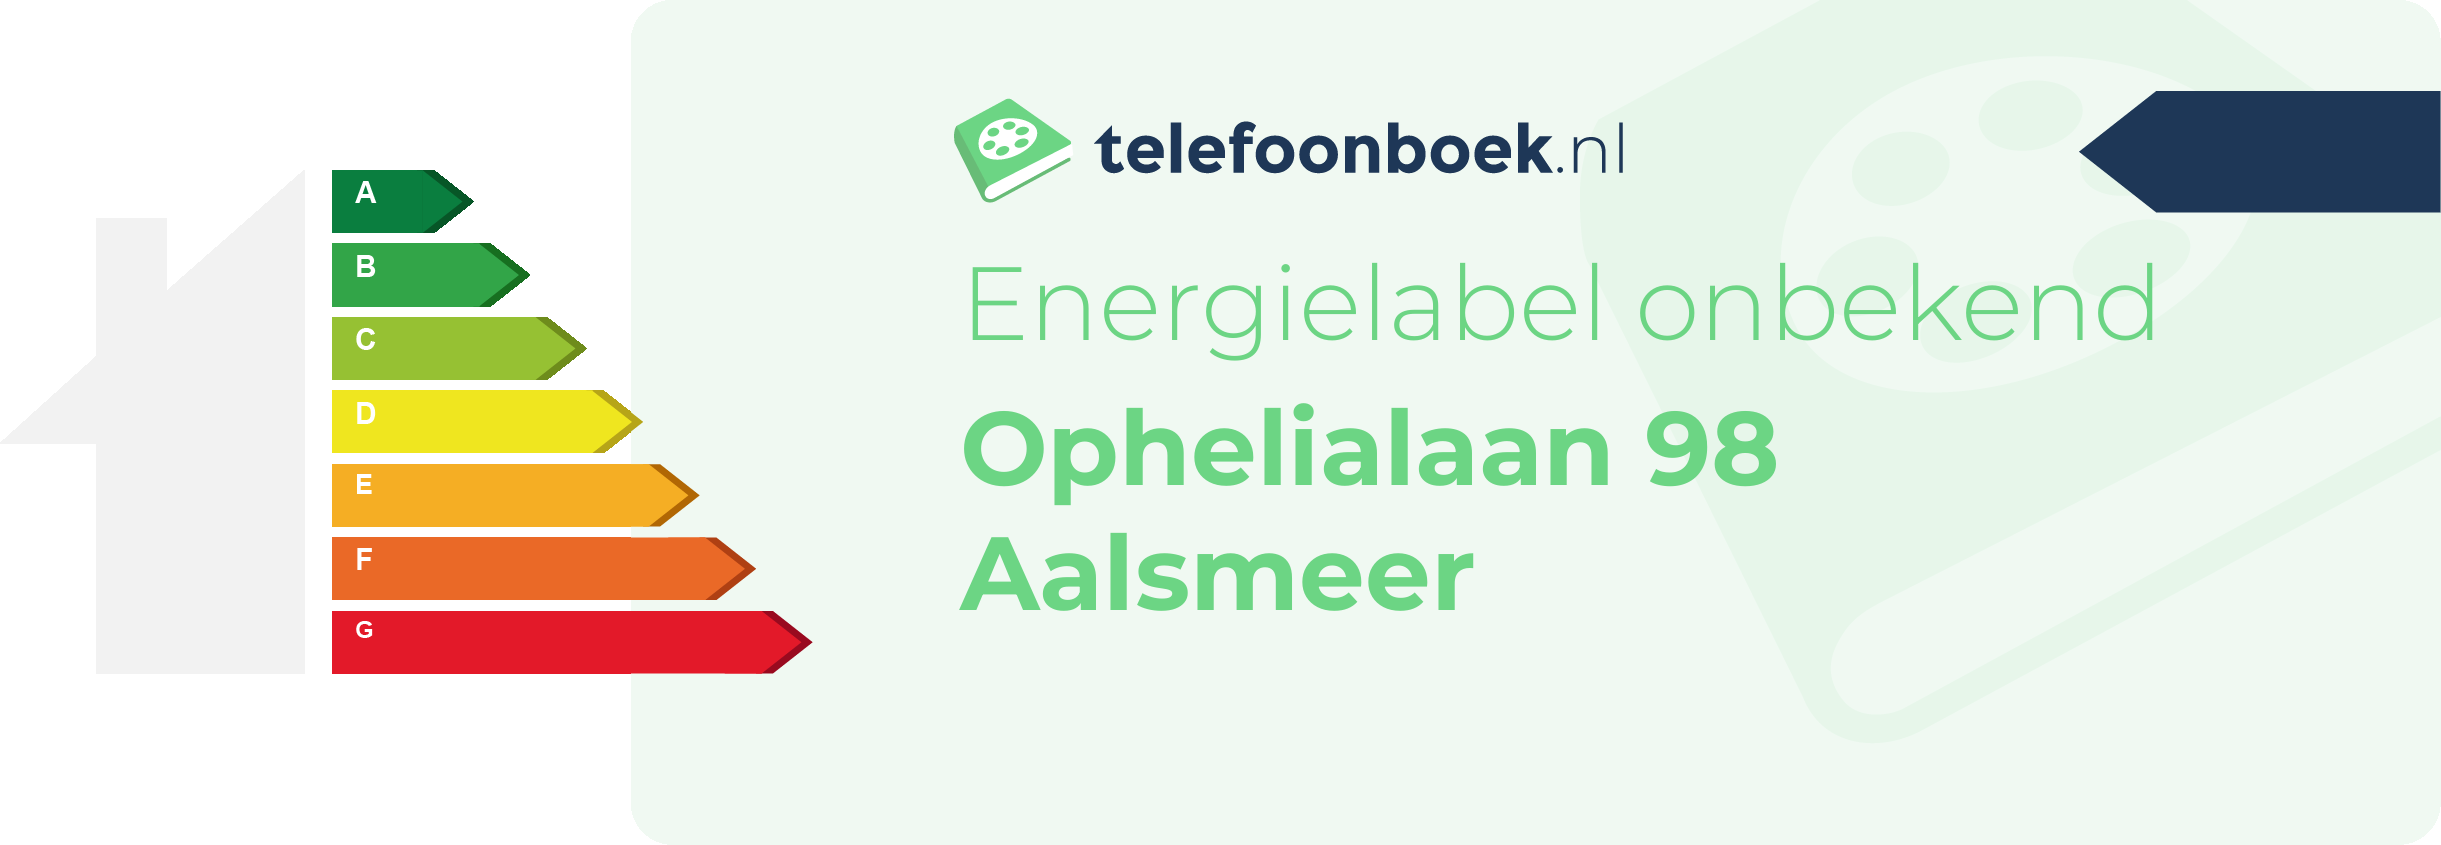 Energielabel Ophelialaan 98 Aalsmeer